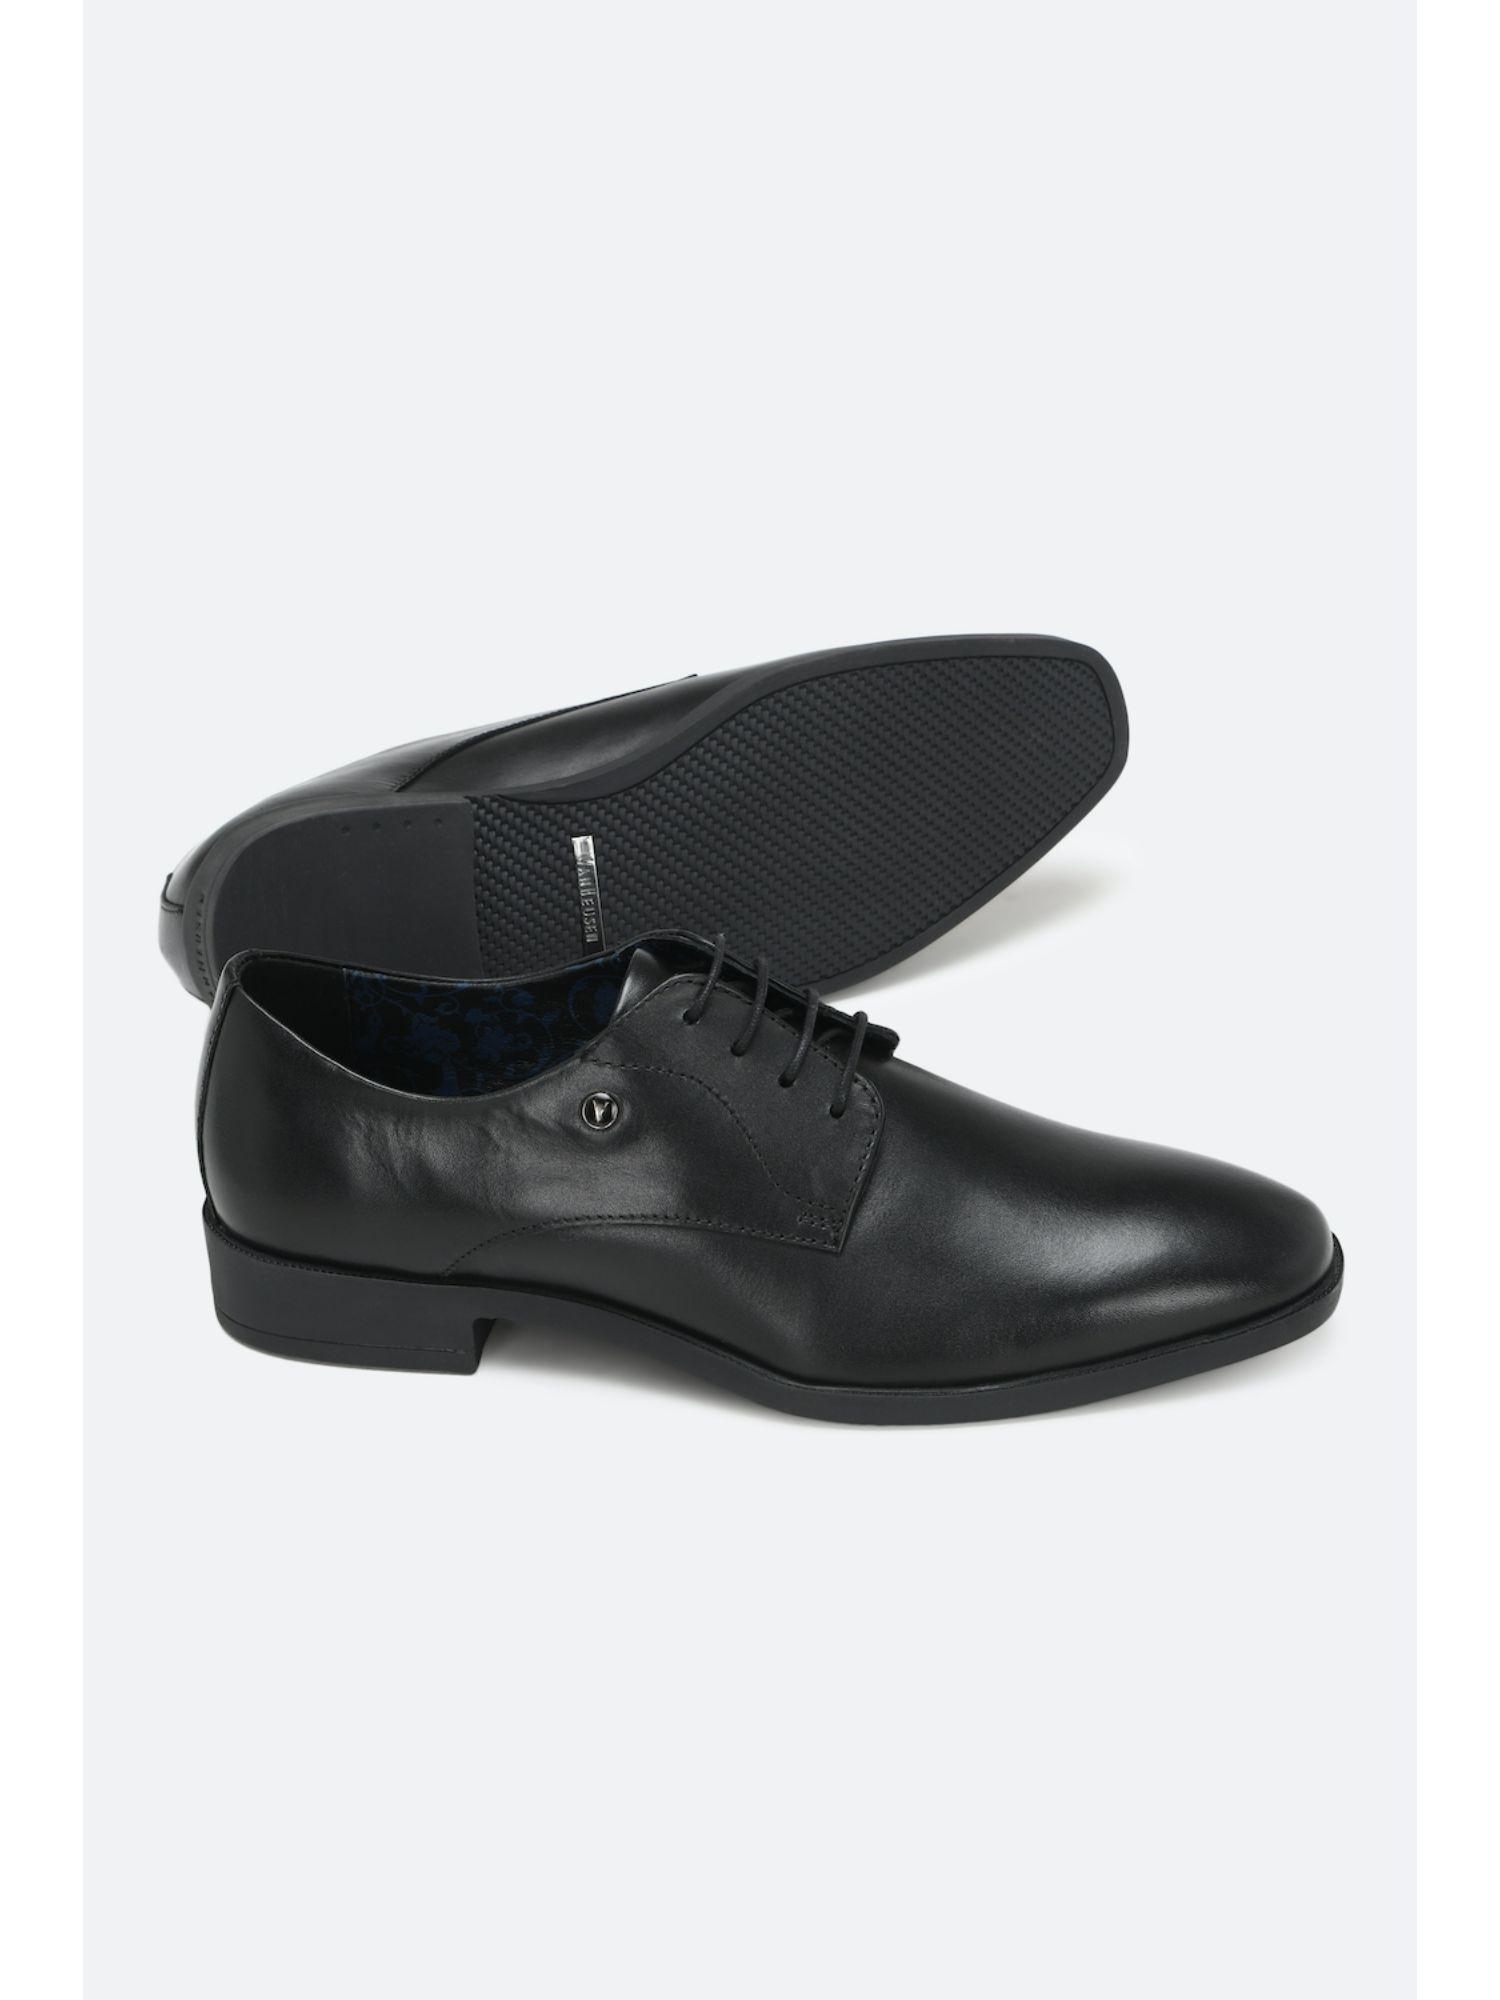 black-lace-up-shoes